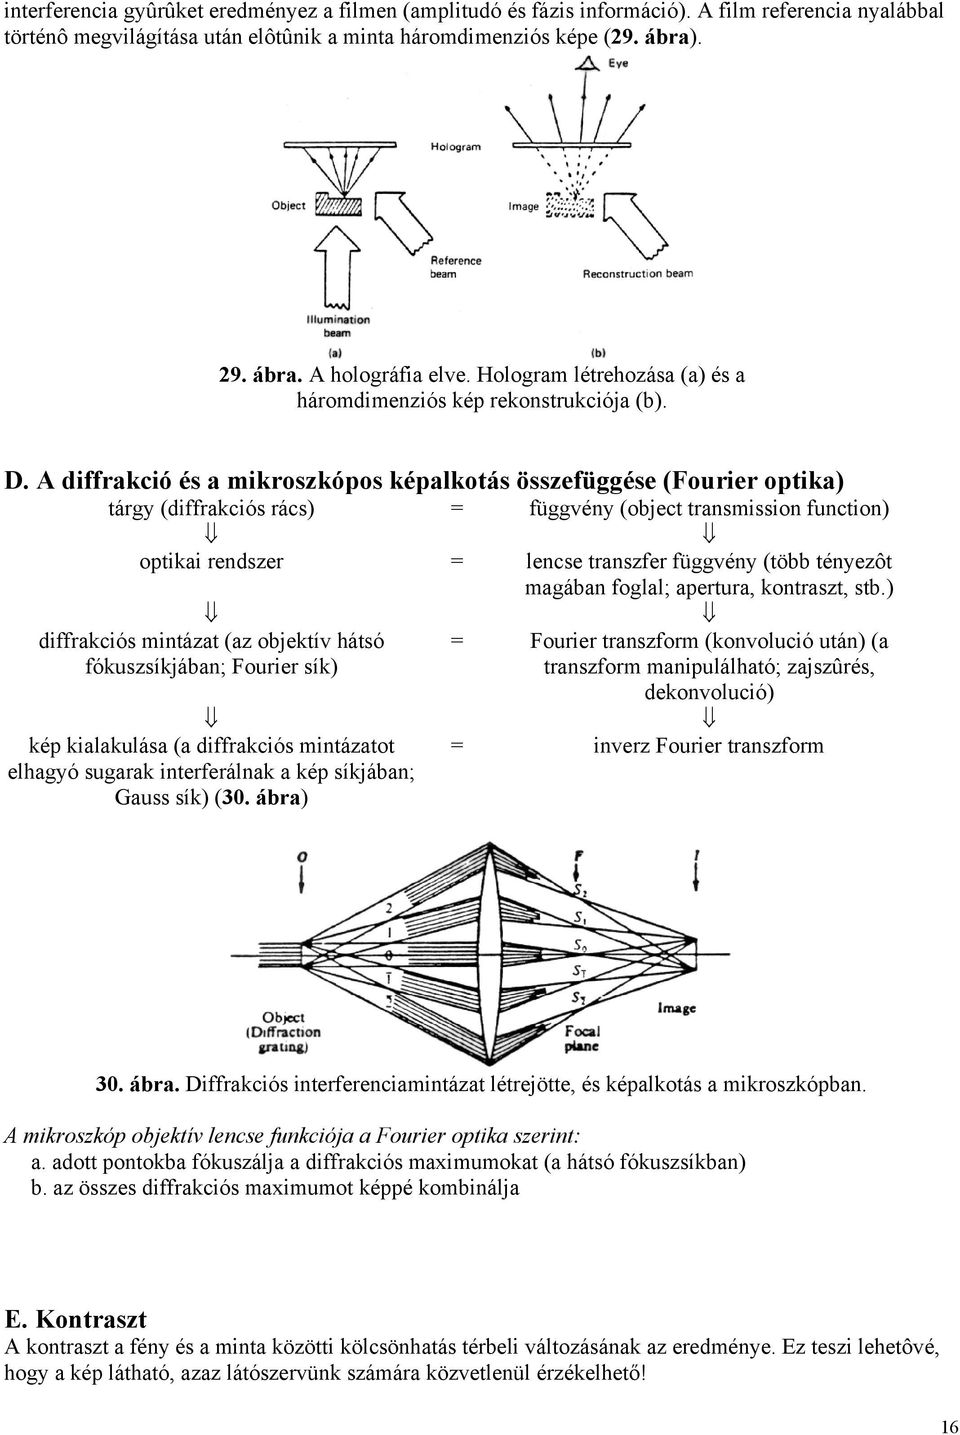 A diffrakció és a mikroszkópos képalkotás összefüggése (Fourier optika) tárgy (diffrakciós rács) = függvény (object transmission function) optikai rendszer = lencse transzfer függvény (több tényezôt